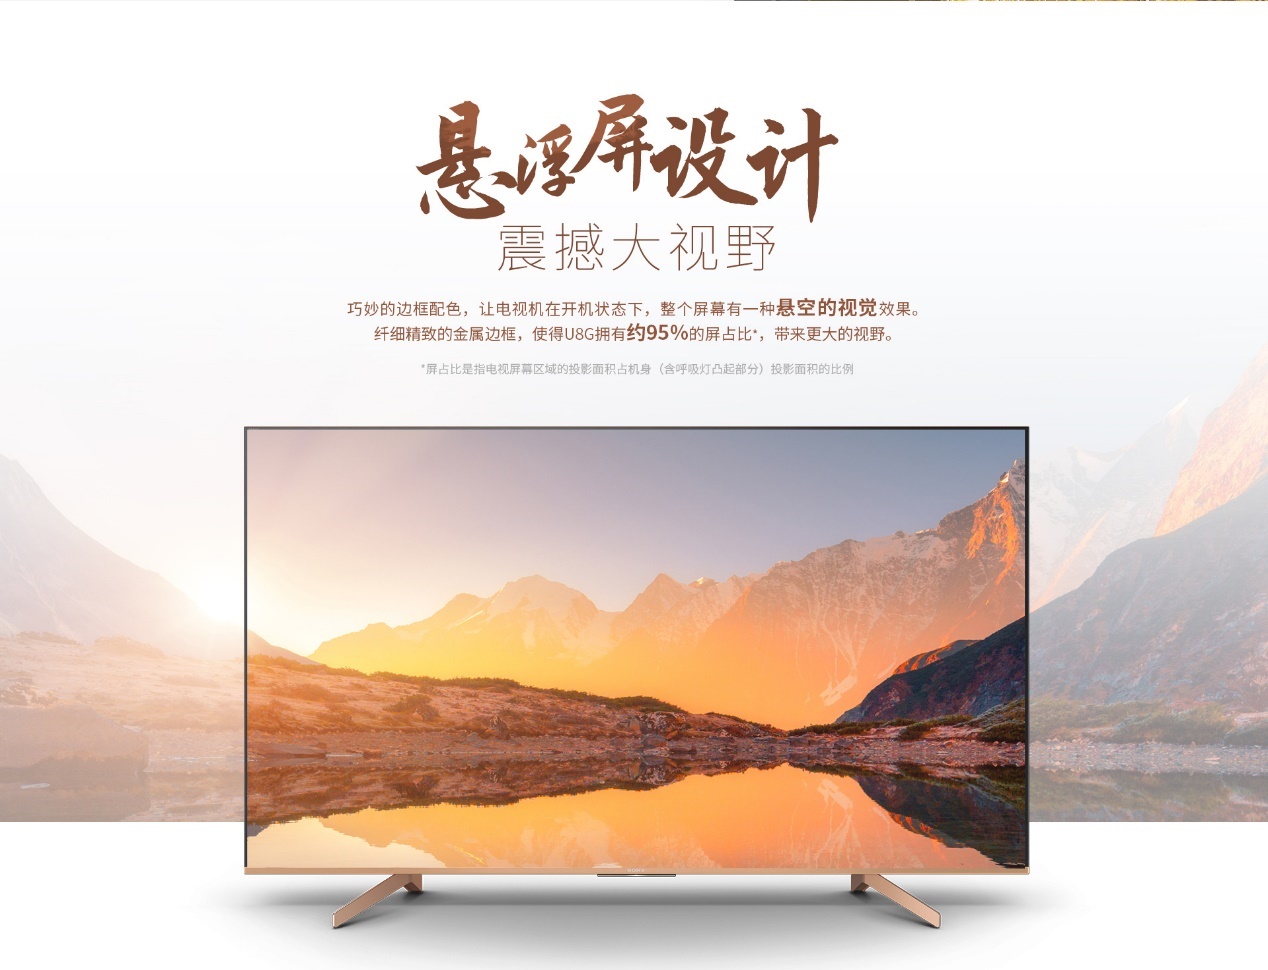 索尼联合京东发布4K HDR液晶电视U8G  55寸价格6699元-视听圈